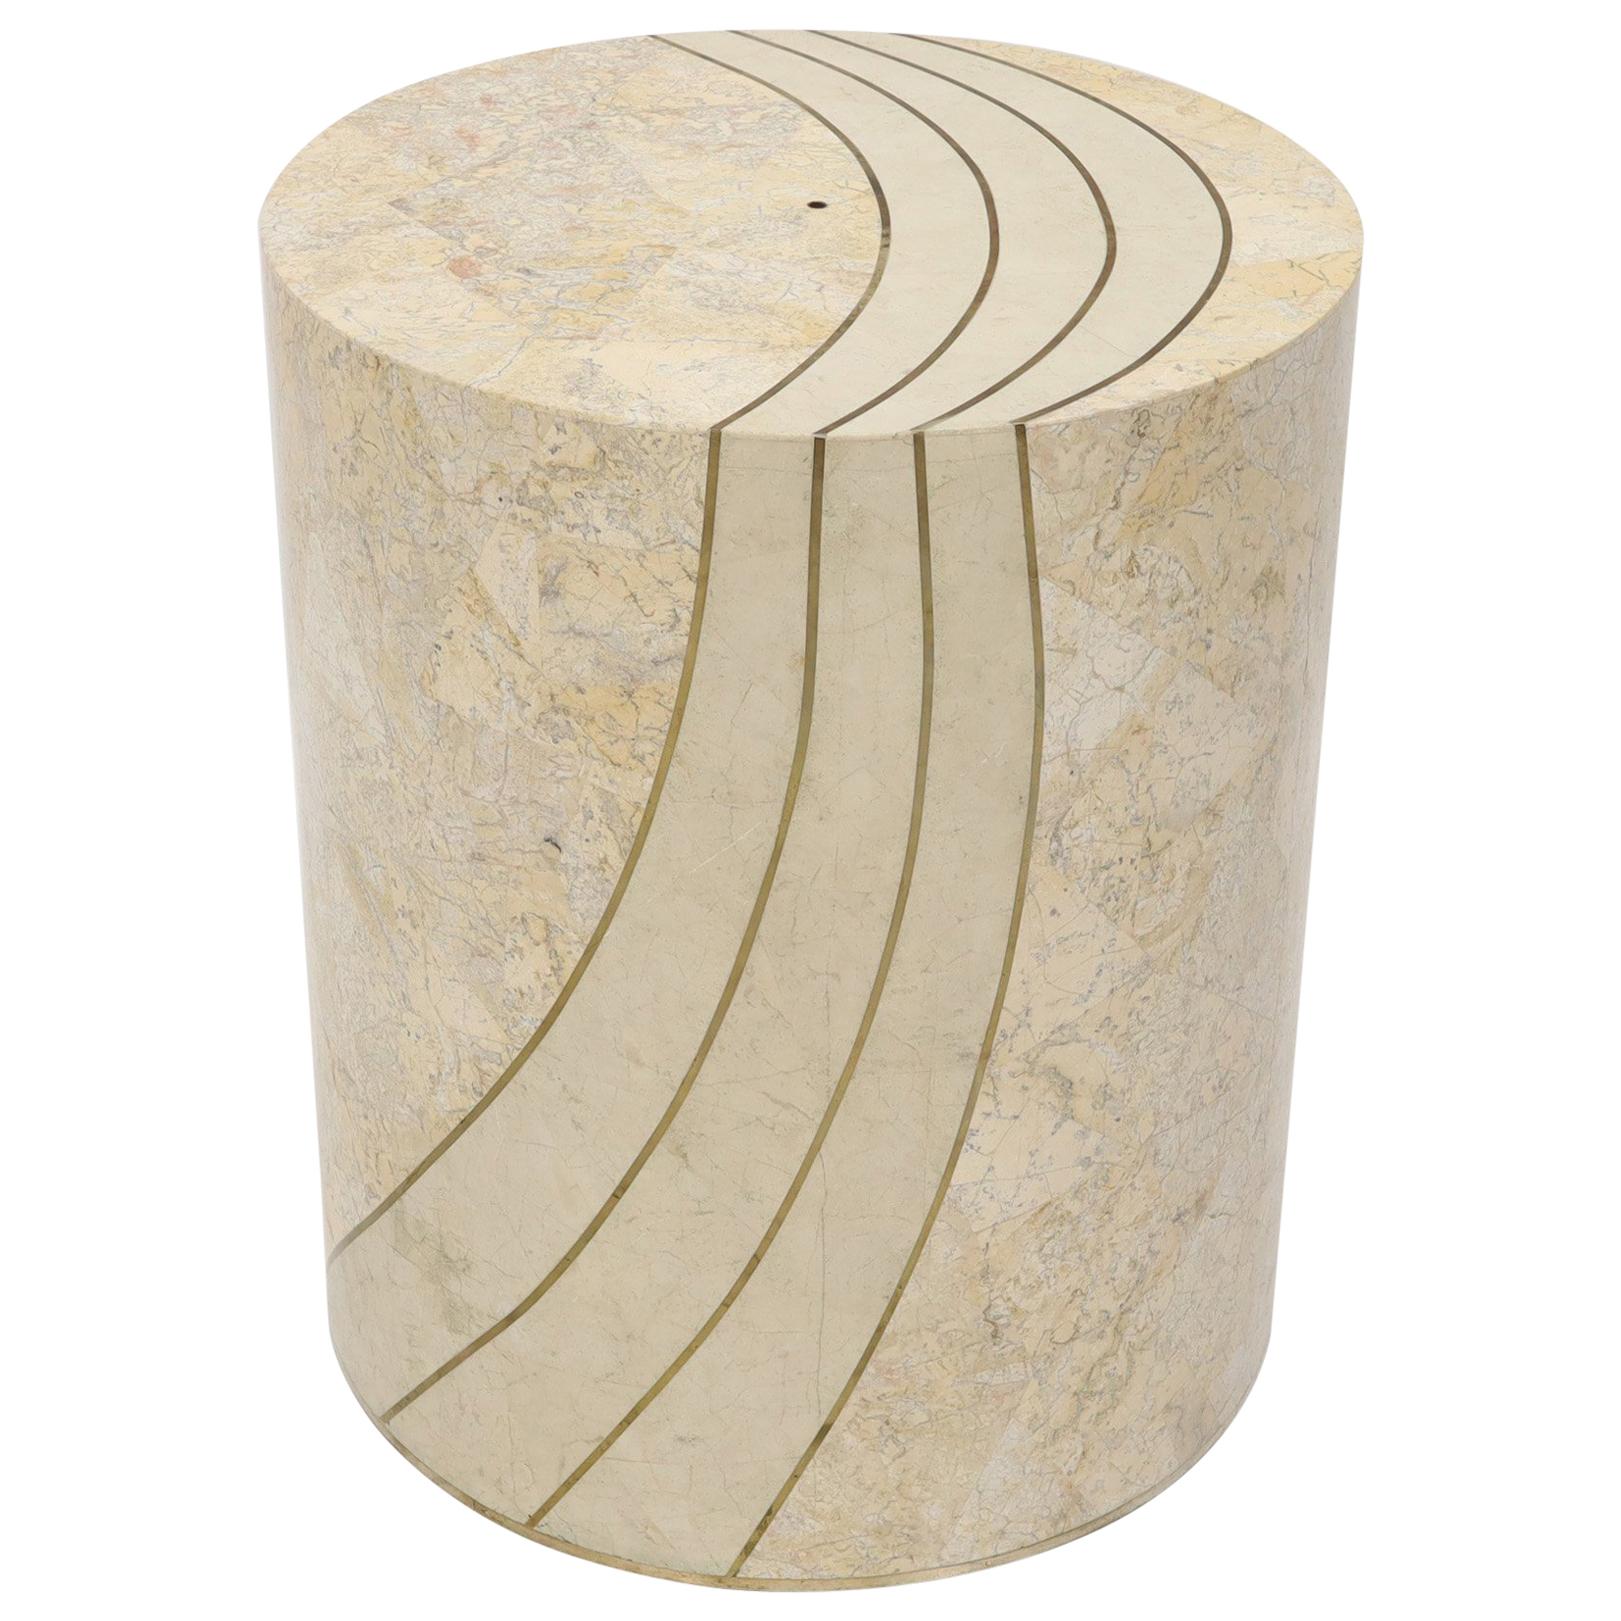 Grand piédestal de table à manger cylindrique en placage de pierre tessellée et incrustation de laiton